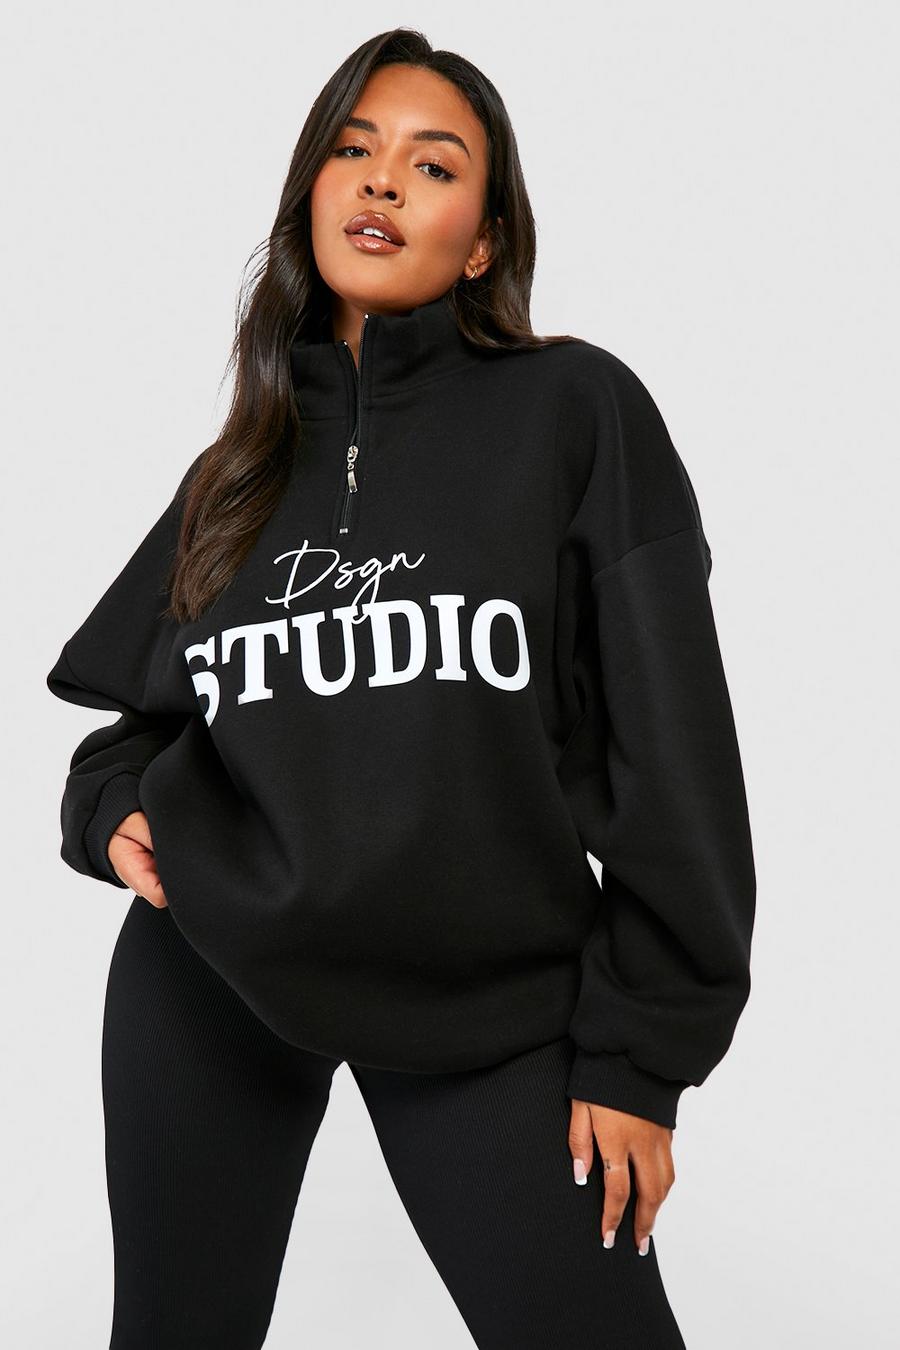 Plus Sweatshirt mit Dsgn Studio-Schriftzug und halbem Reißverschluss, Black schwarz